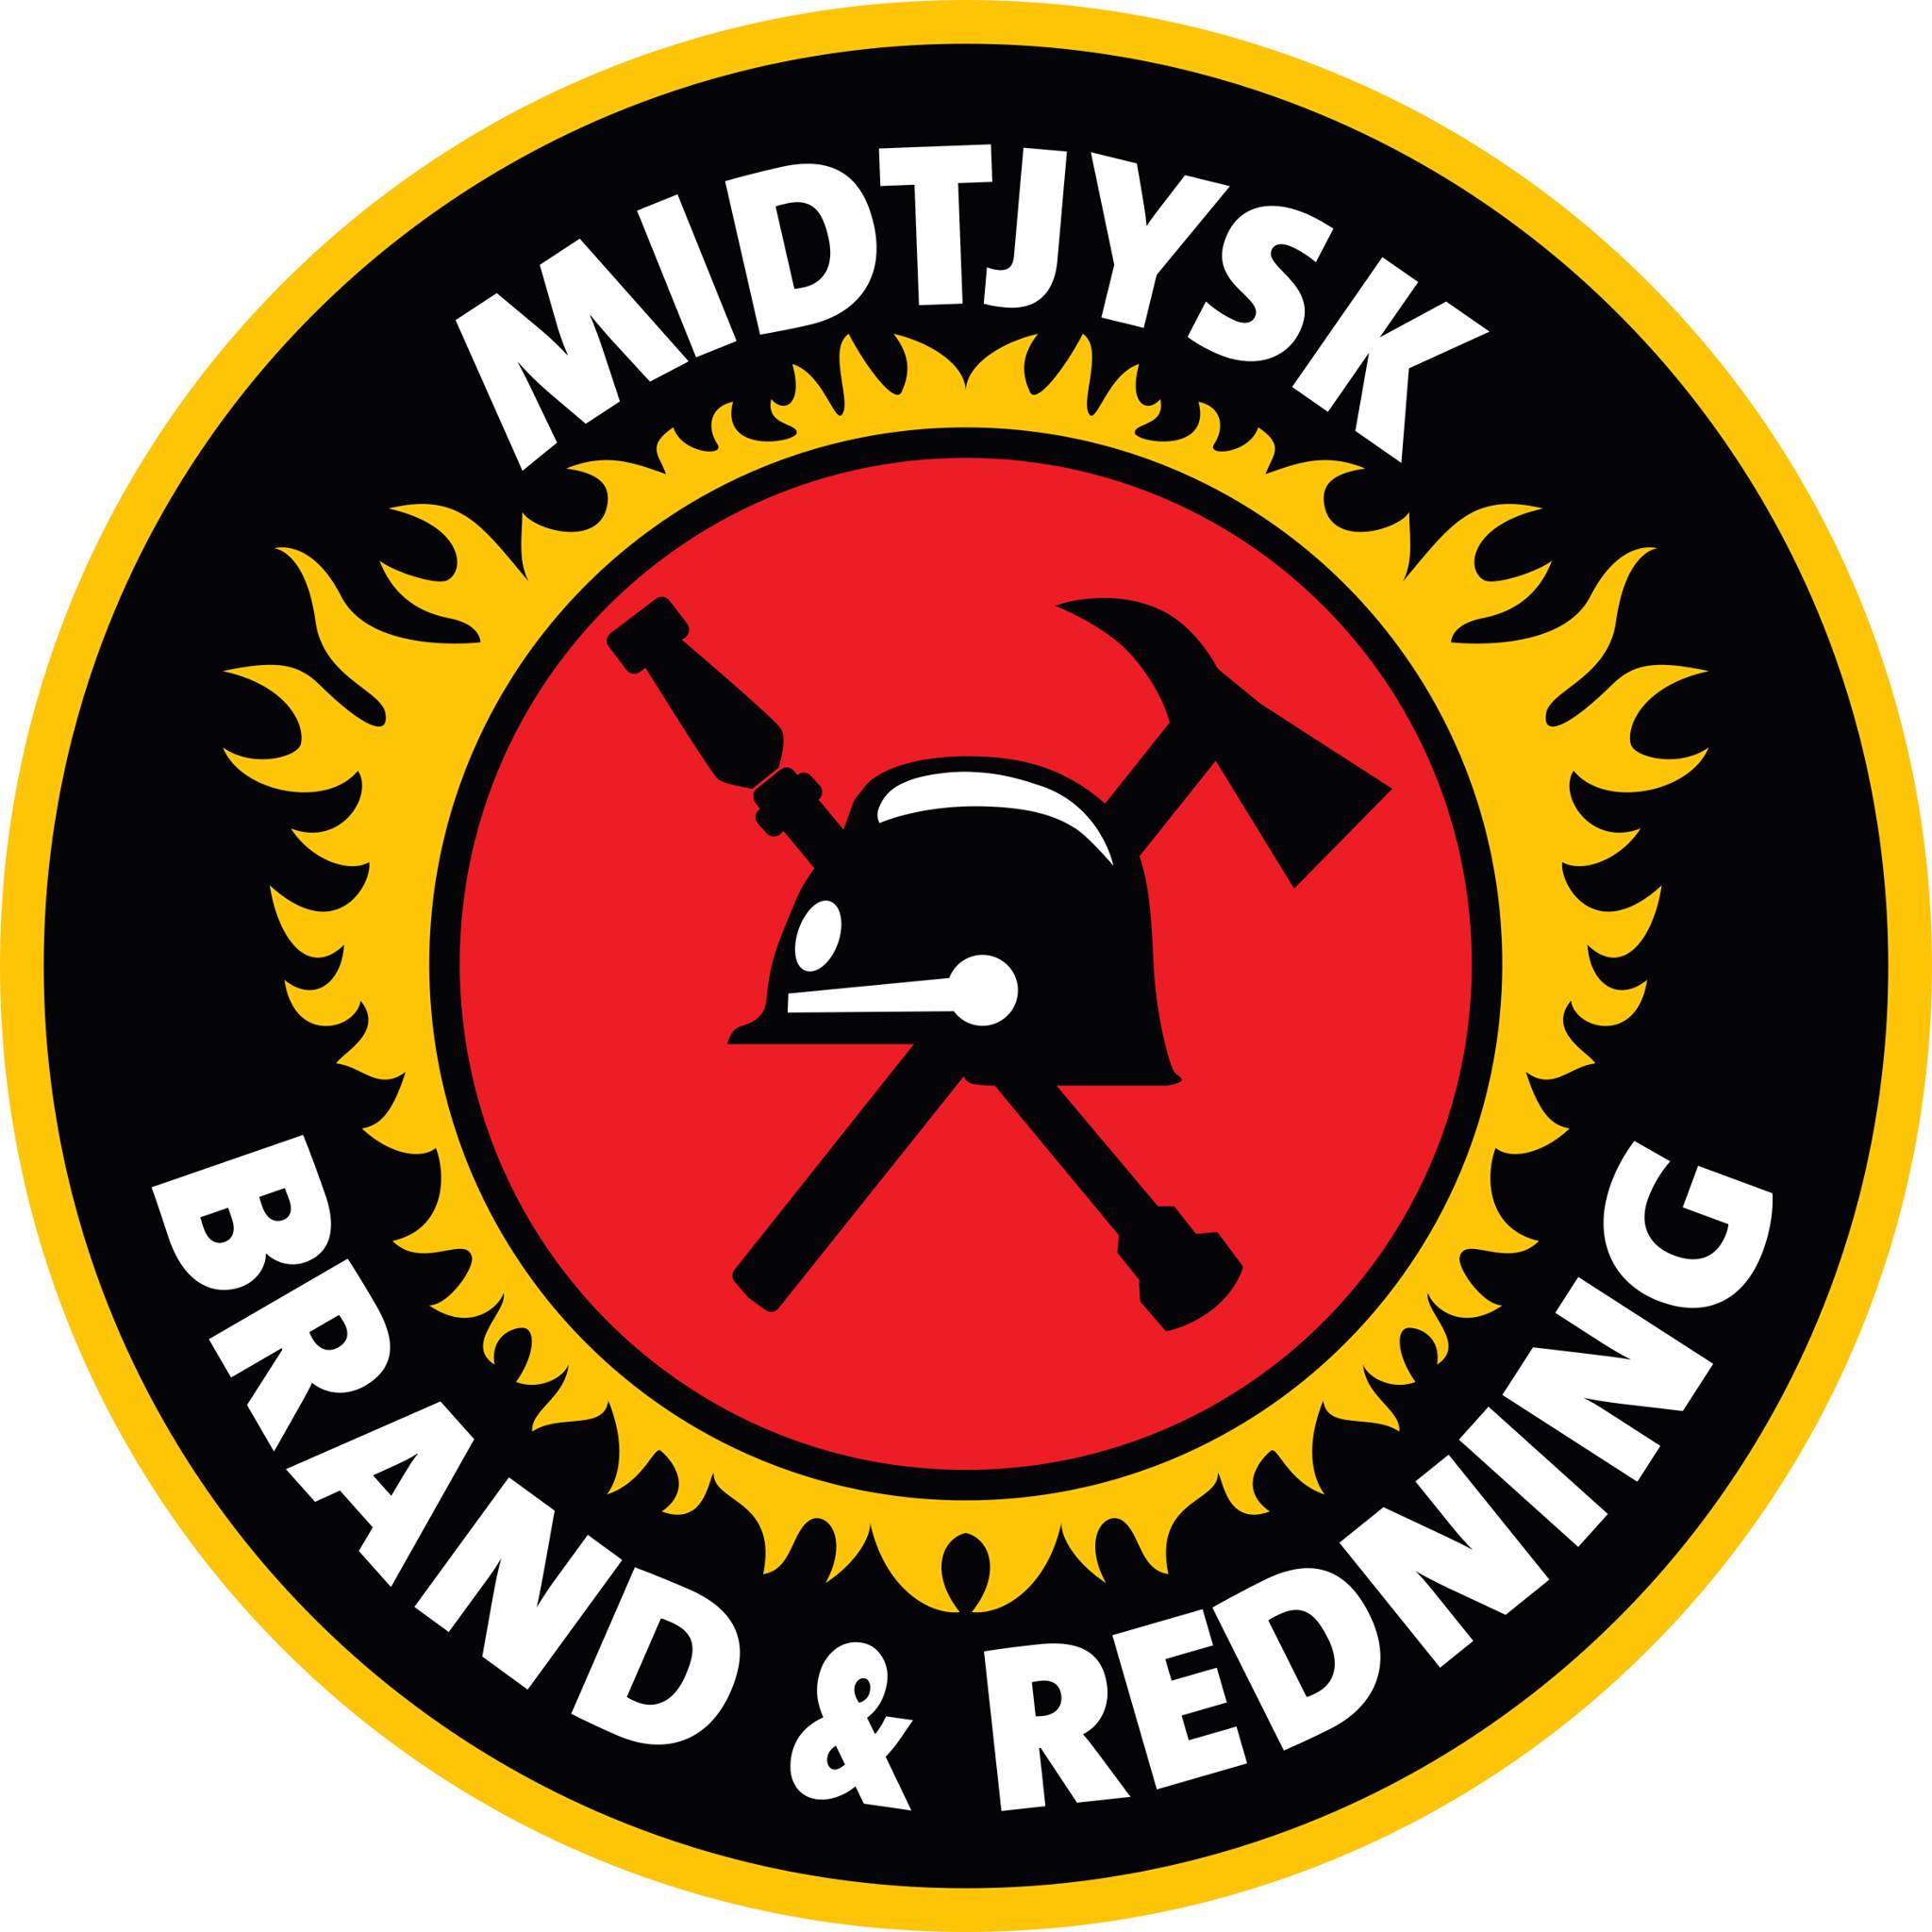 Midtjysk Brand & Redning I/S